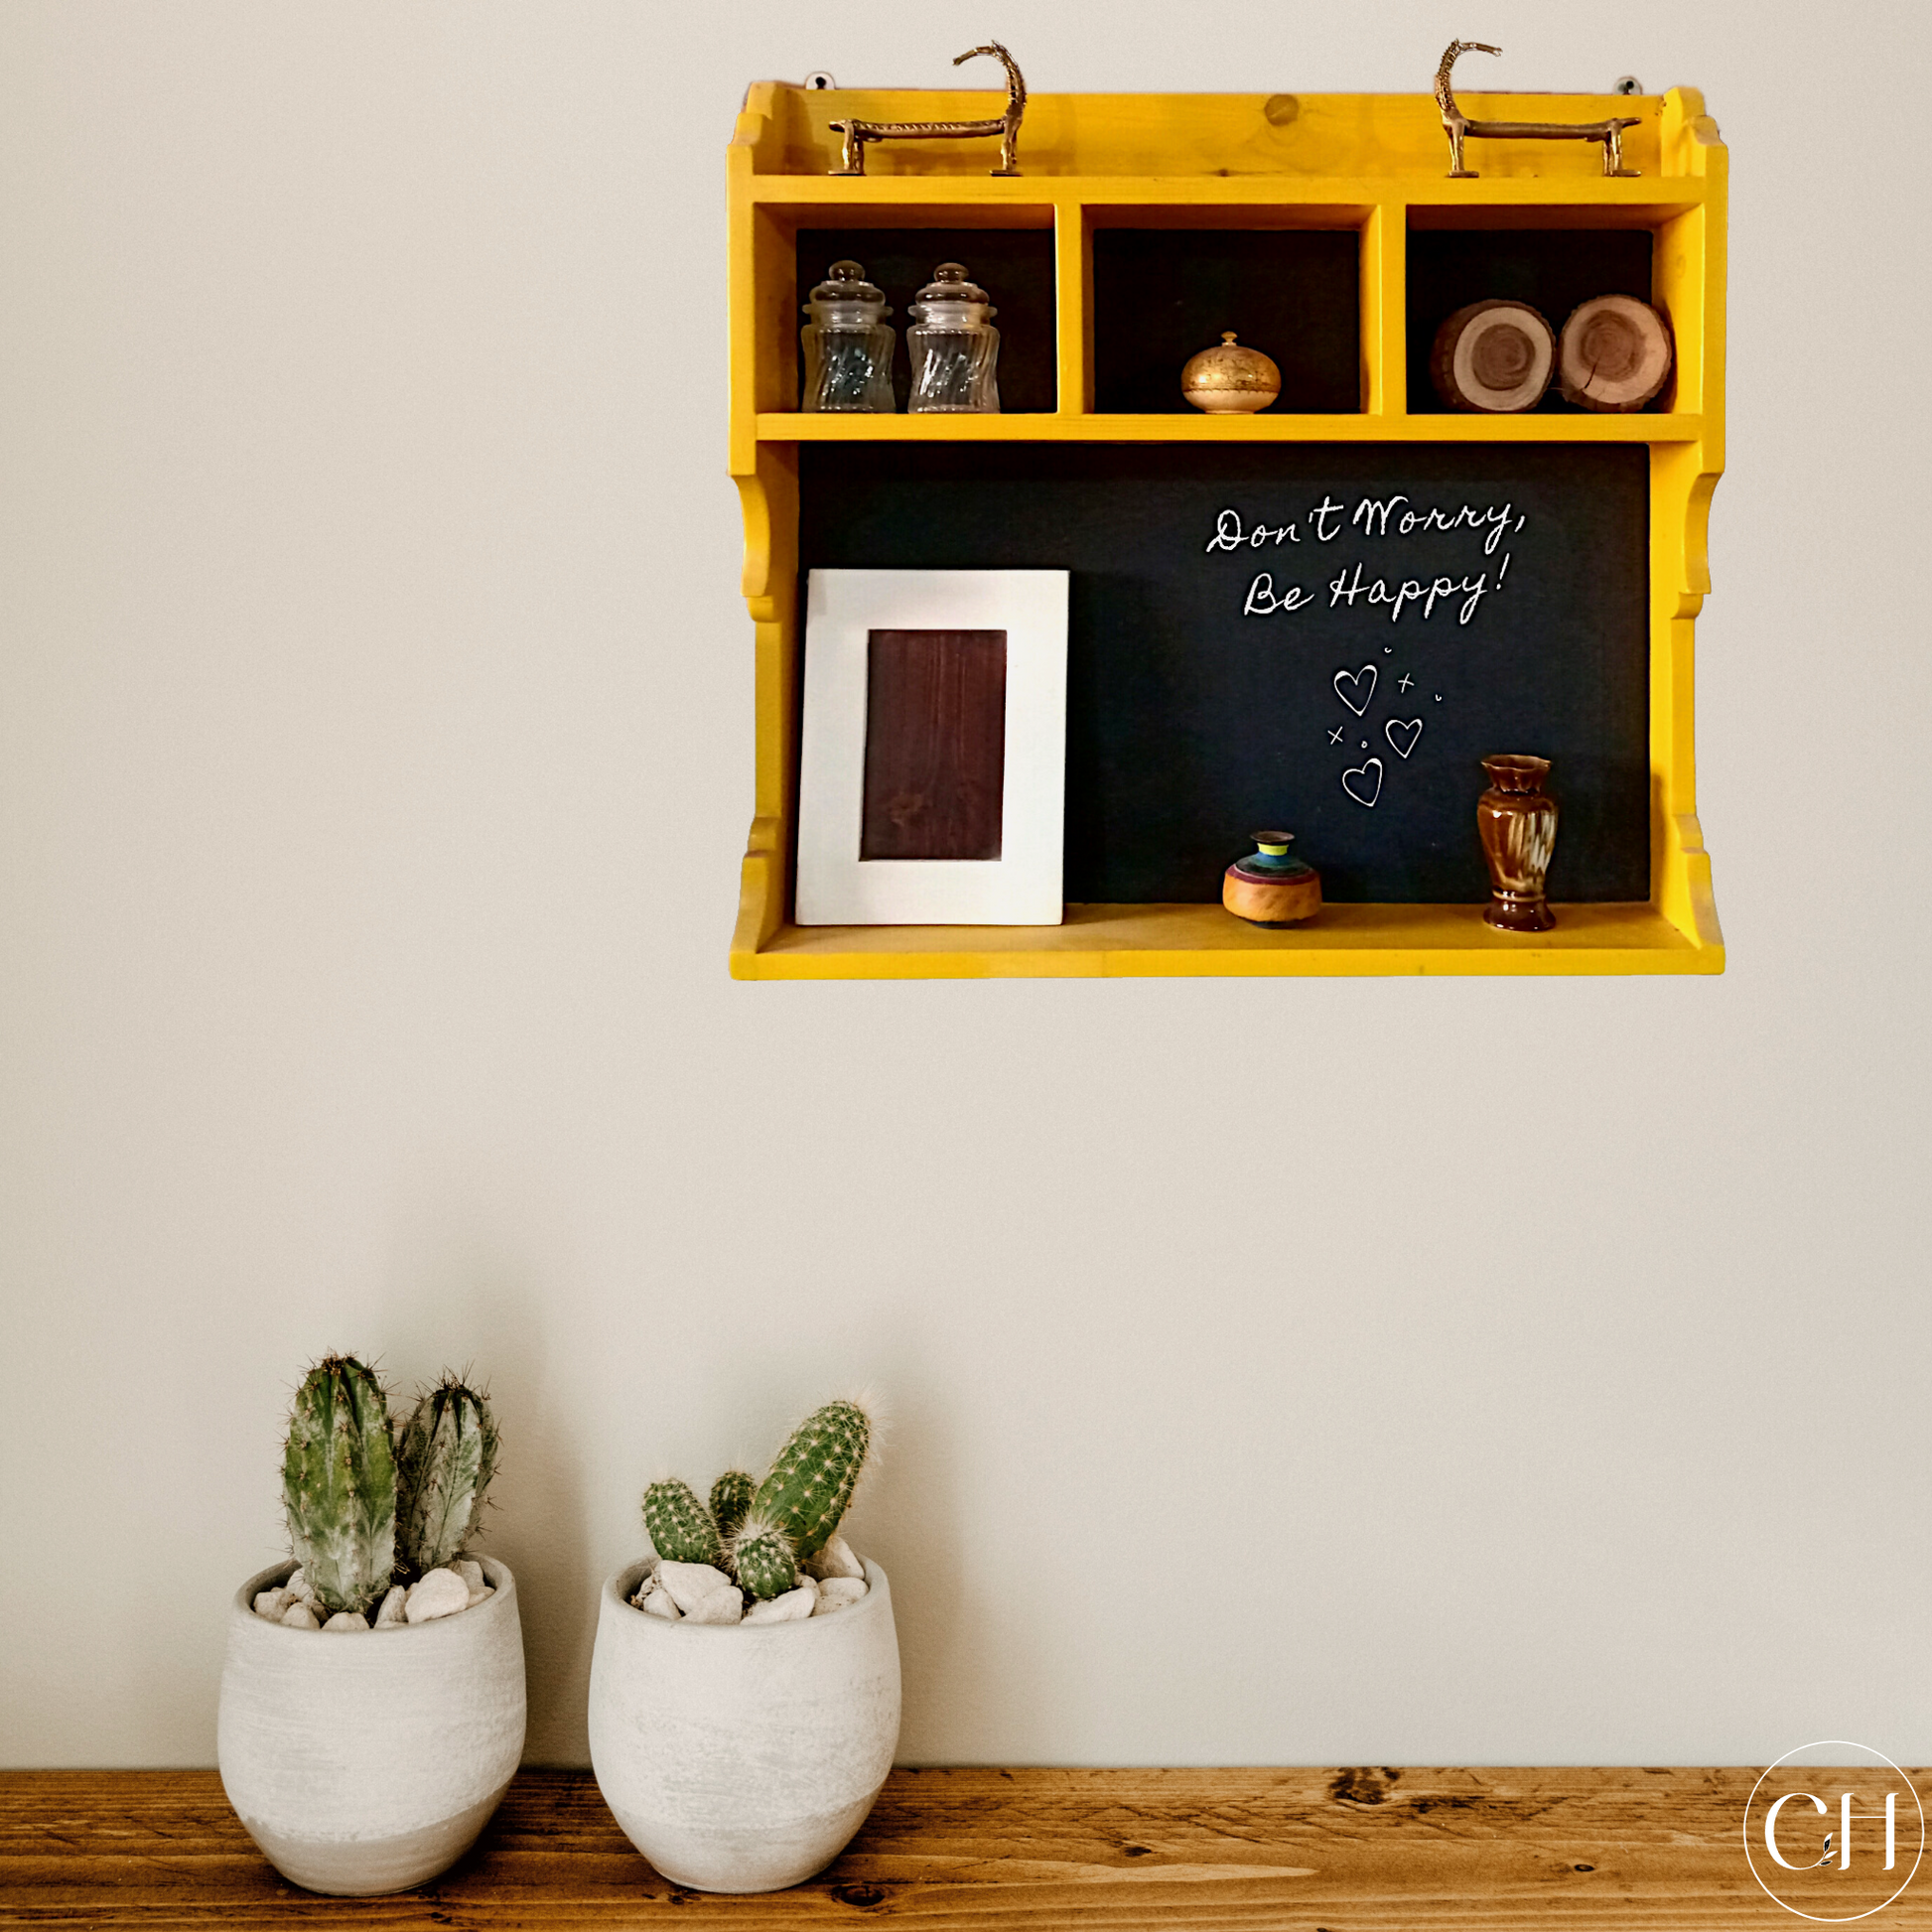 Aurum - Cottage-style Wall-mounted Shelf - CustHum